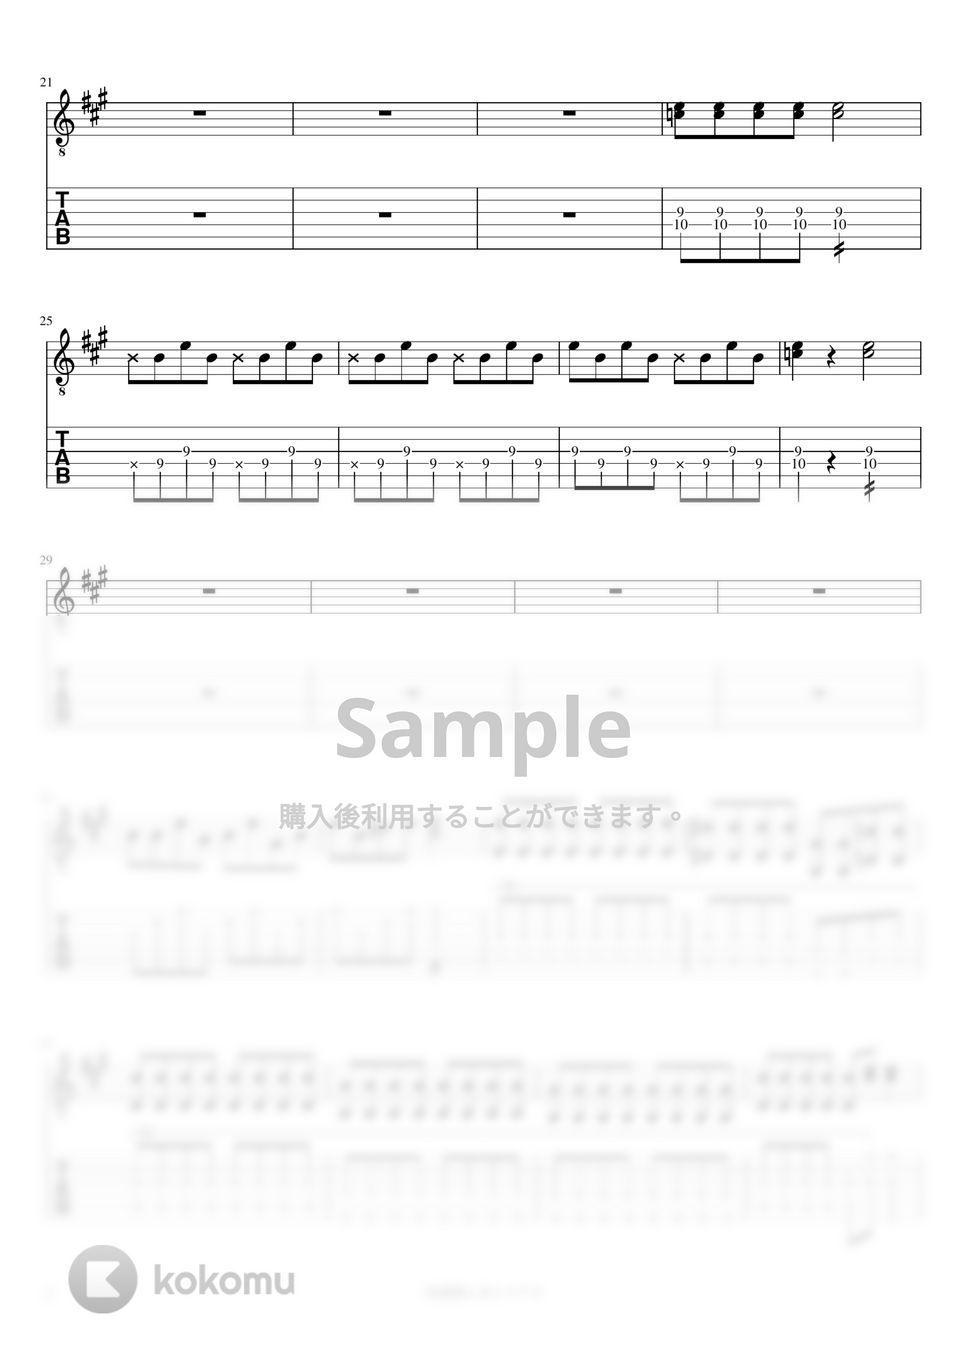 マカロニえんぴつ - 洗濯機と君とラヂオ (リードギター) by J-ROCKギターチャンネル